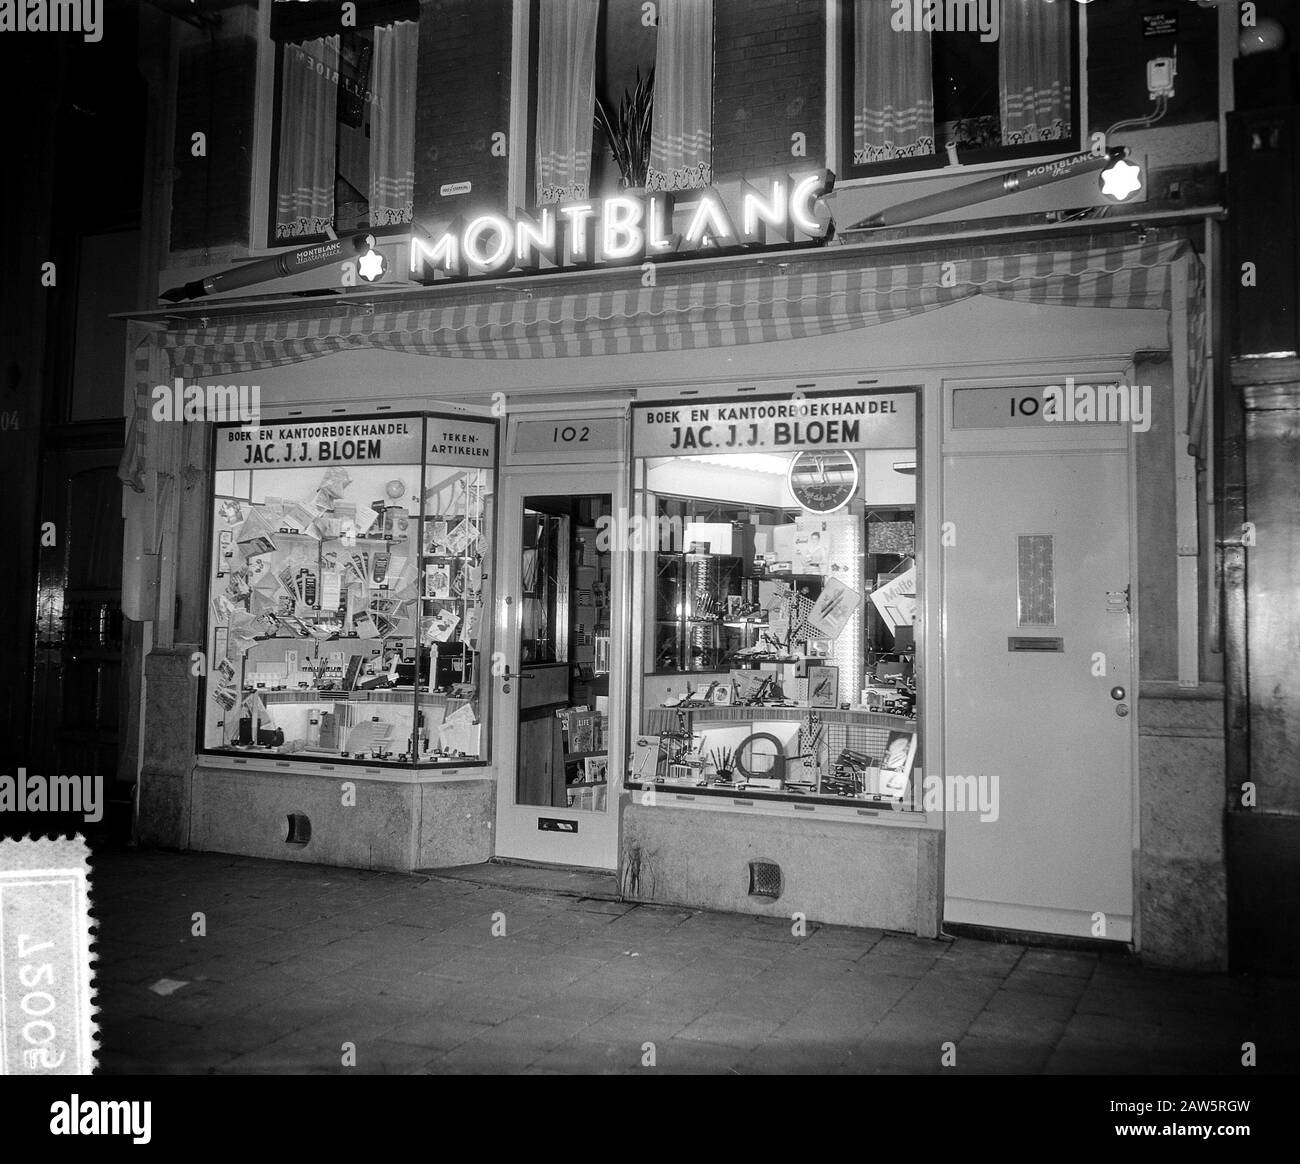 Verträge Montblanc Werbung Amsterdam Datum: 22. Juni 1955 Standort: Amsterdam, Noord-Holland Schlagwörter: Werbeperson Name: Montblanc Werbung Stockfoto